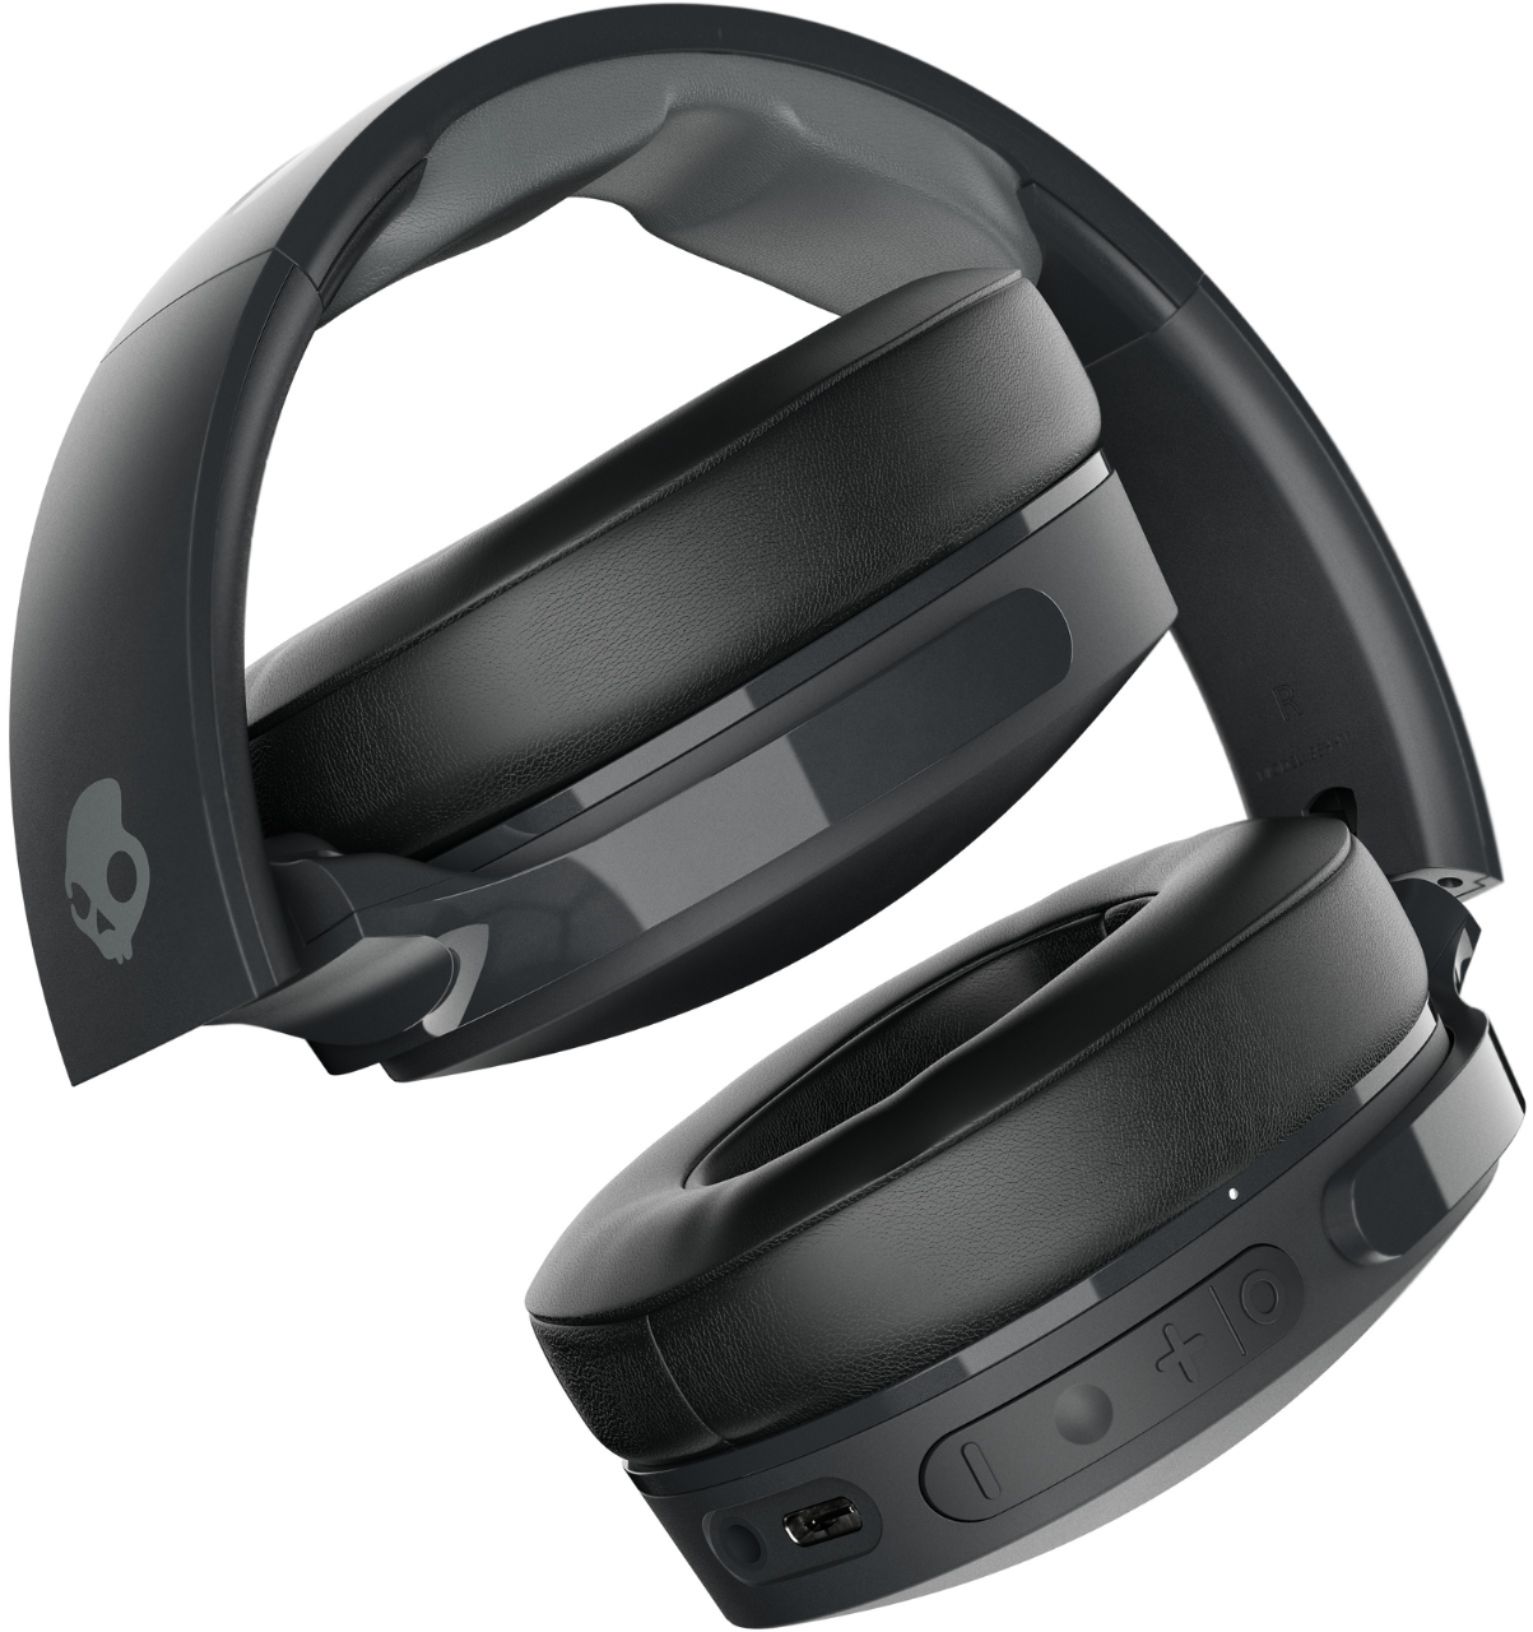 Skullcandy Hesh ANC Over the Ear Noise Canceling Wireless Headphones True  Black S6HHW-N740 - Best Buy